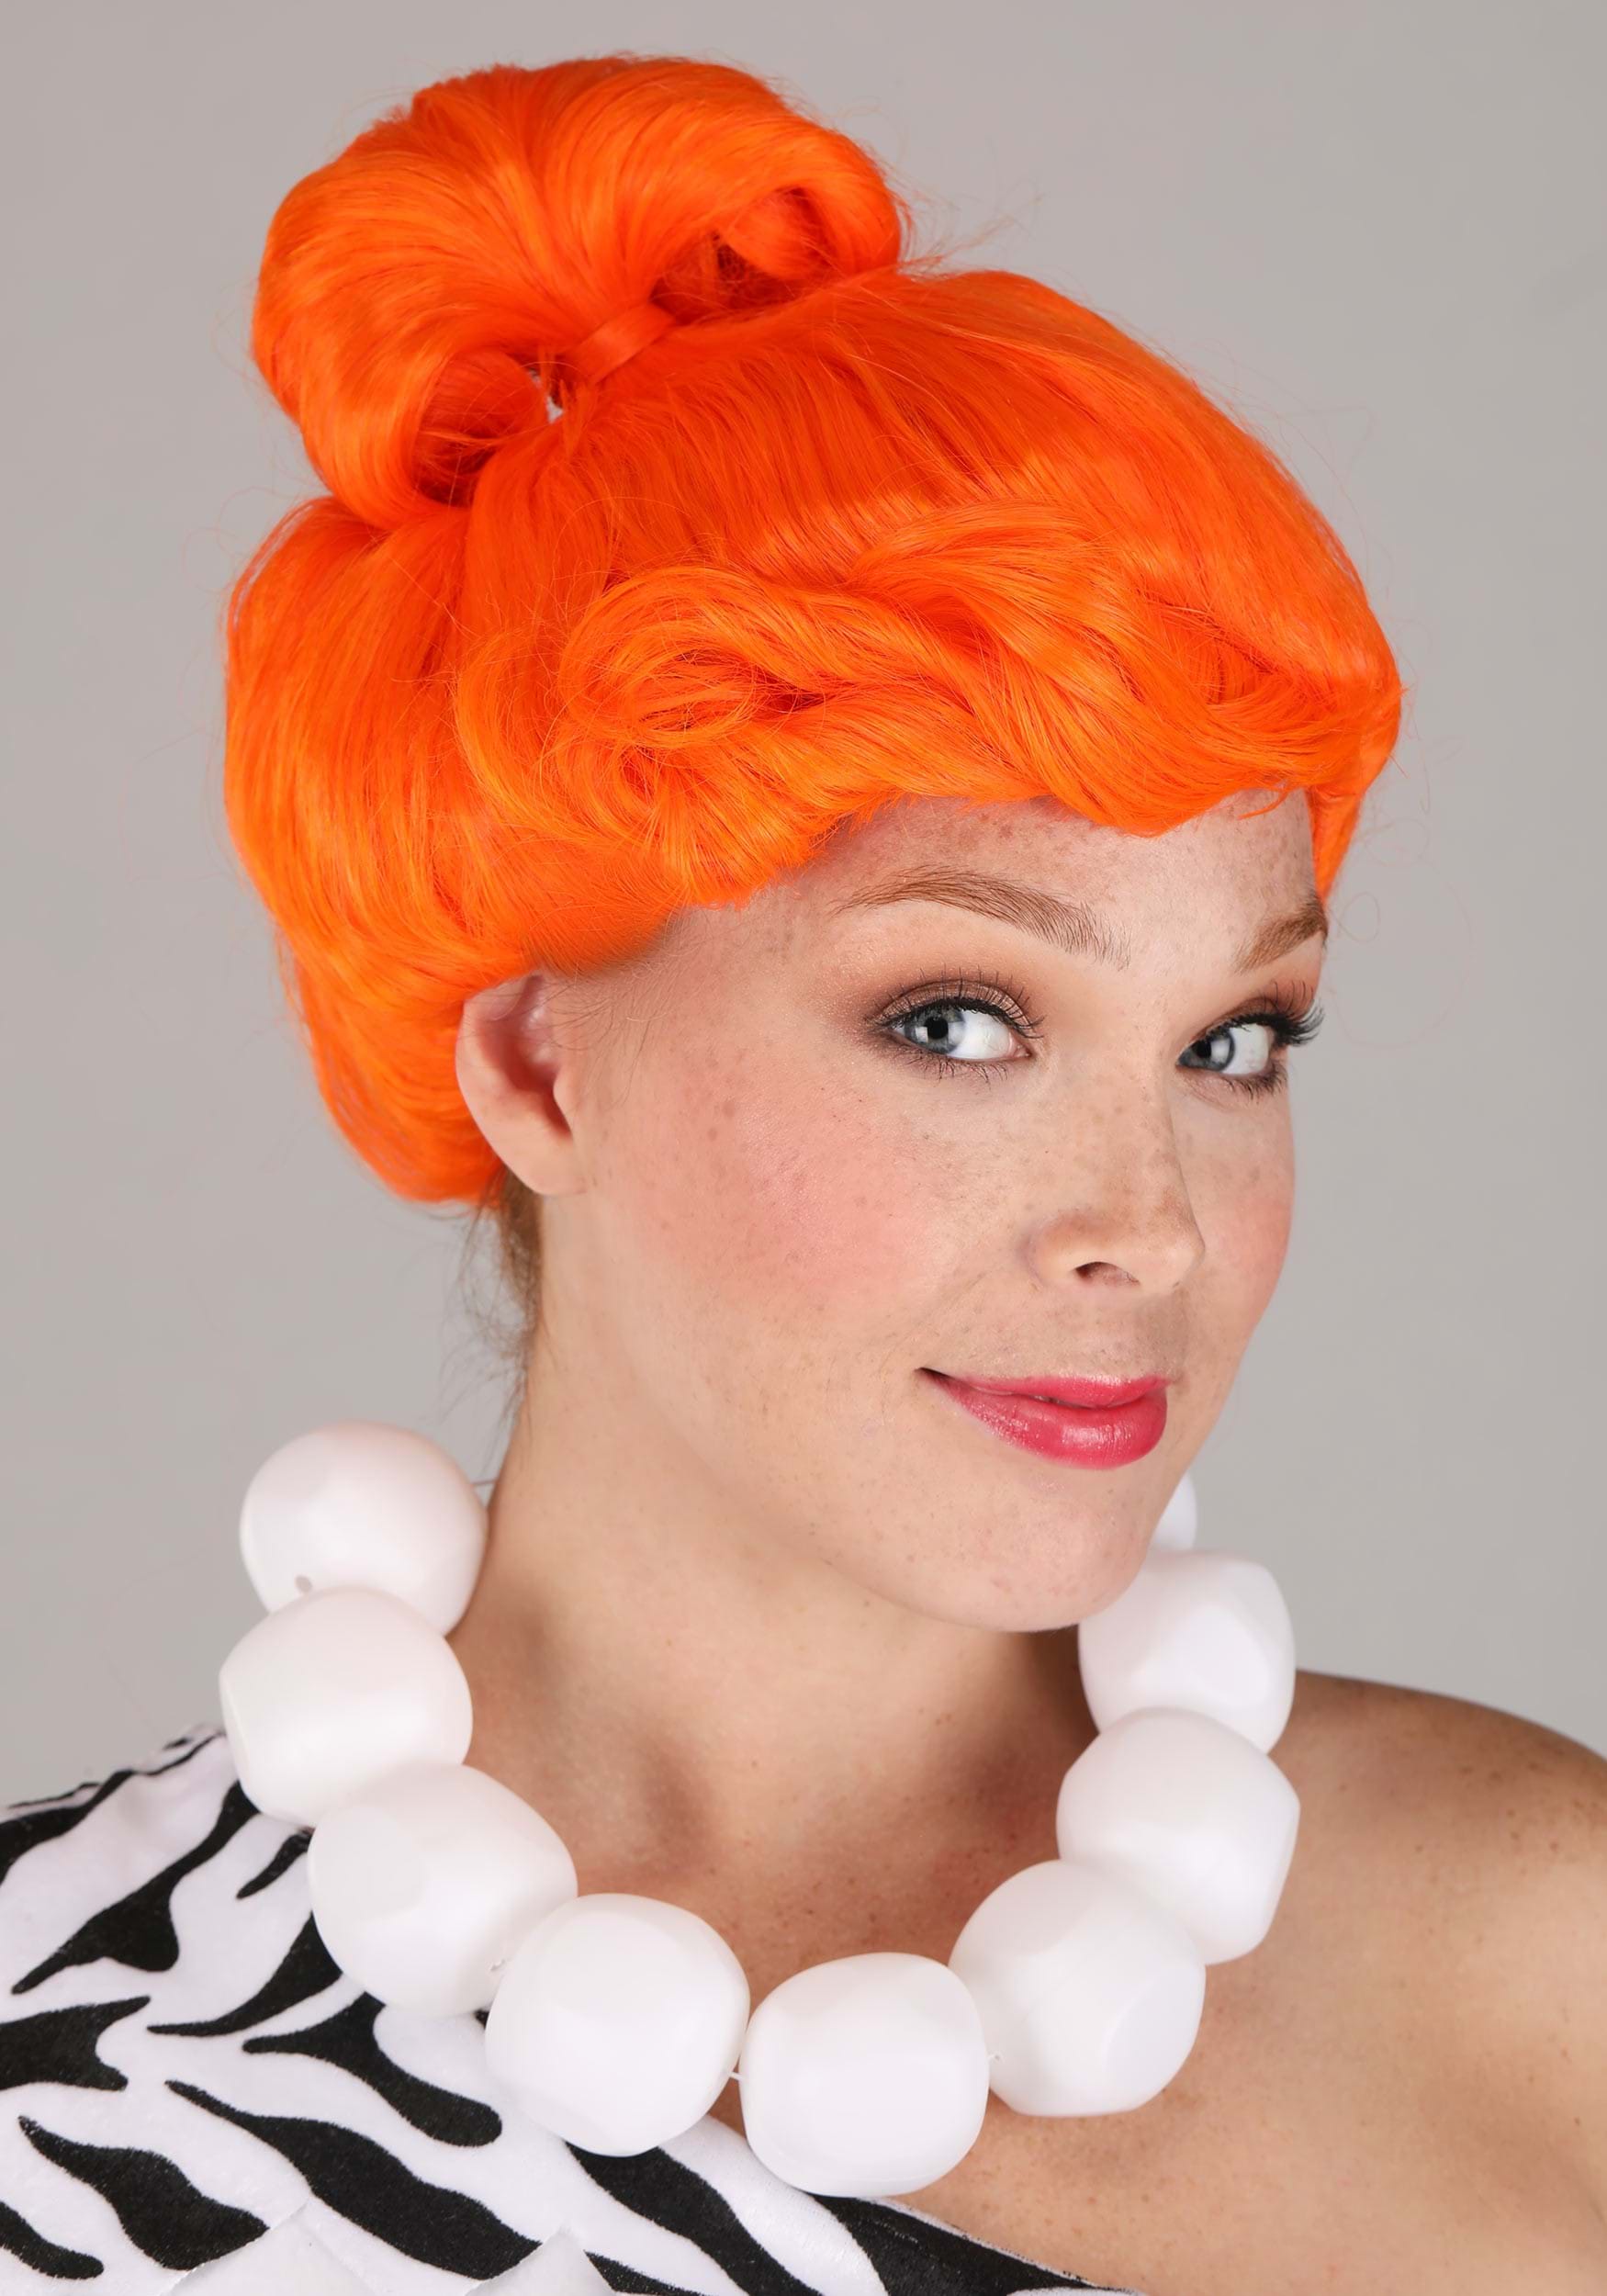 Deluxe Wilma Flintstone Costume For Women